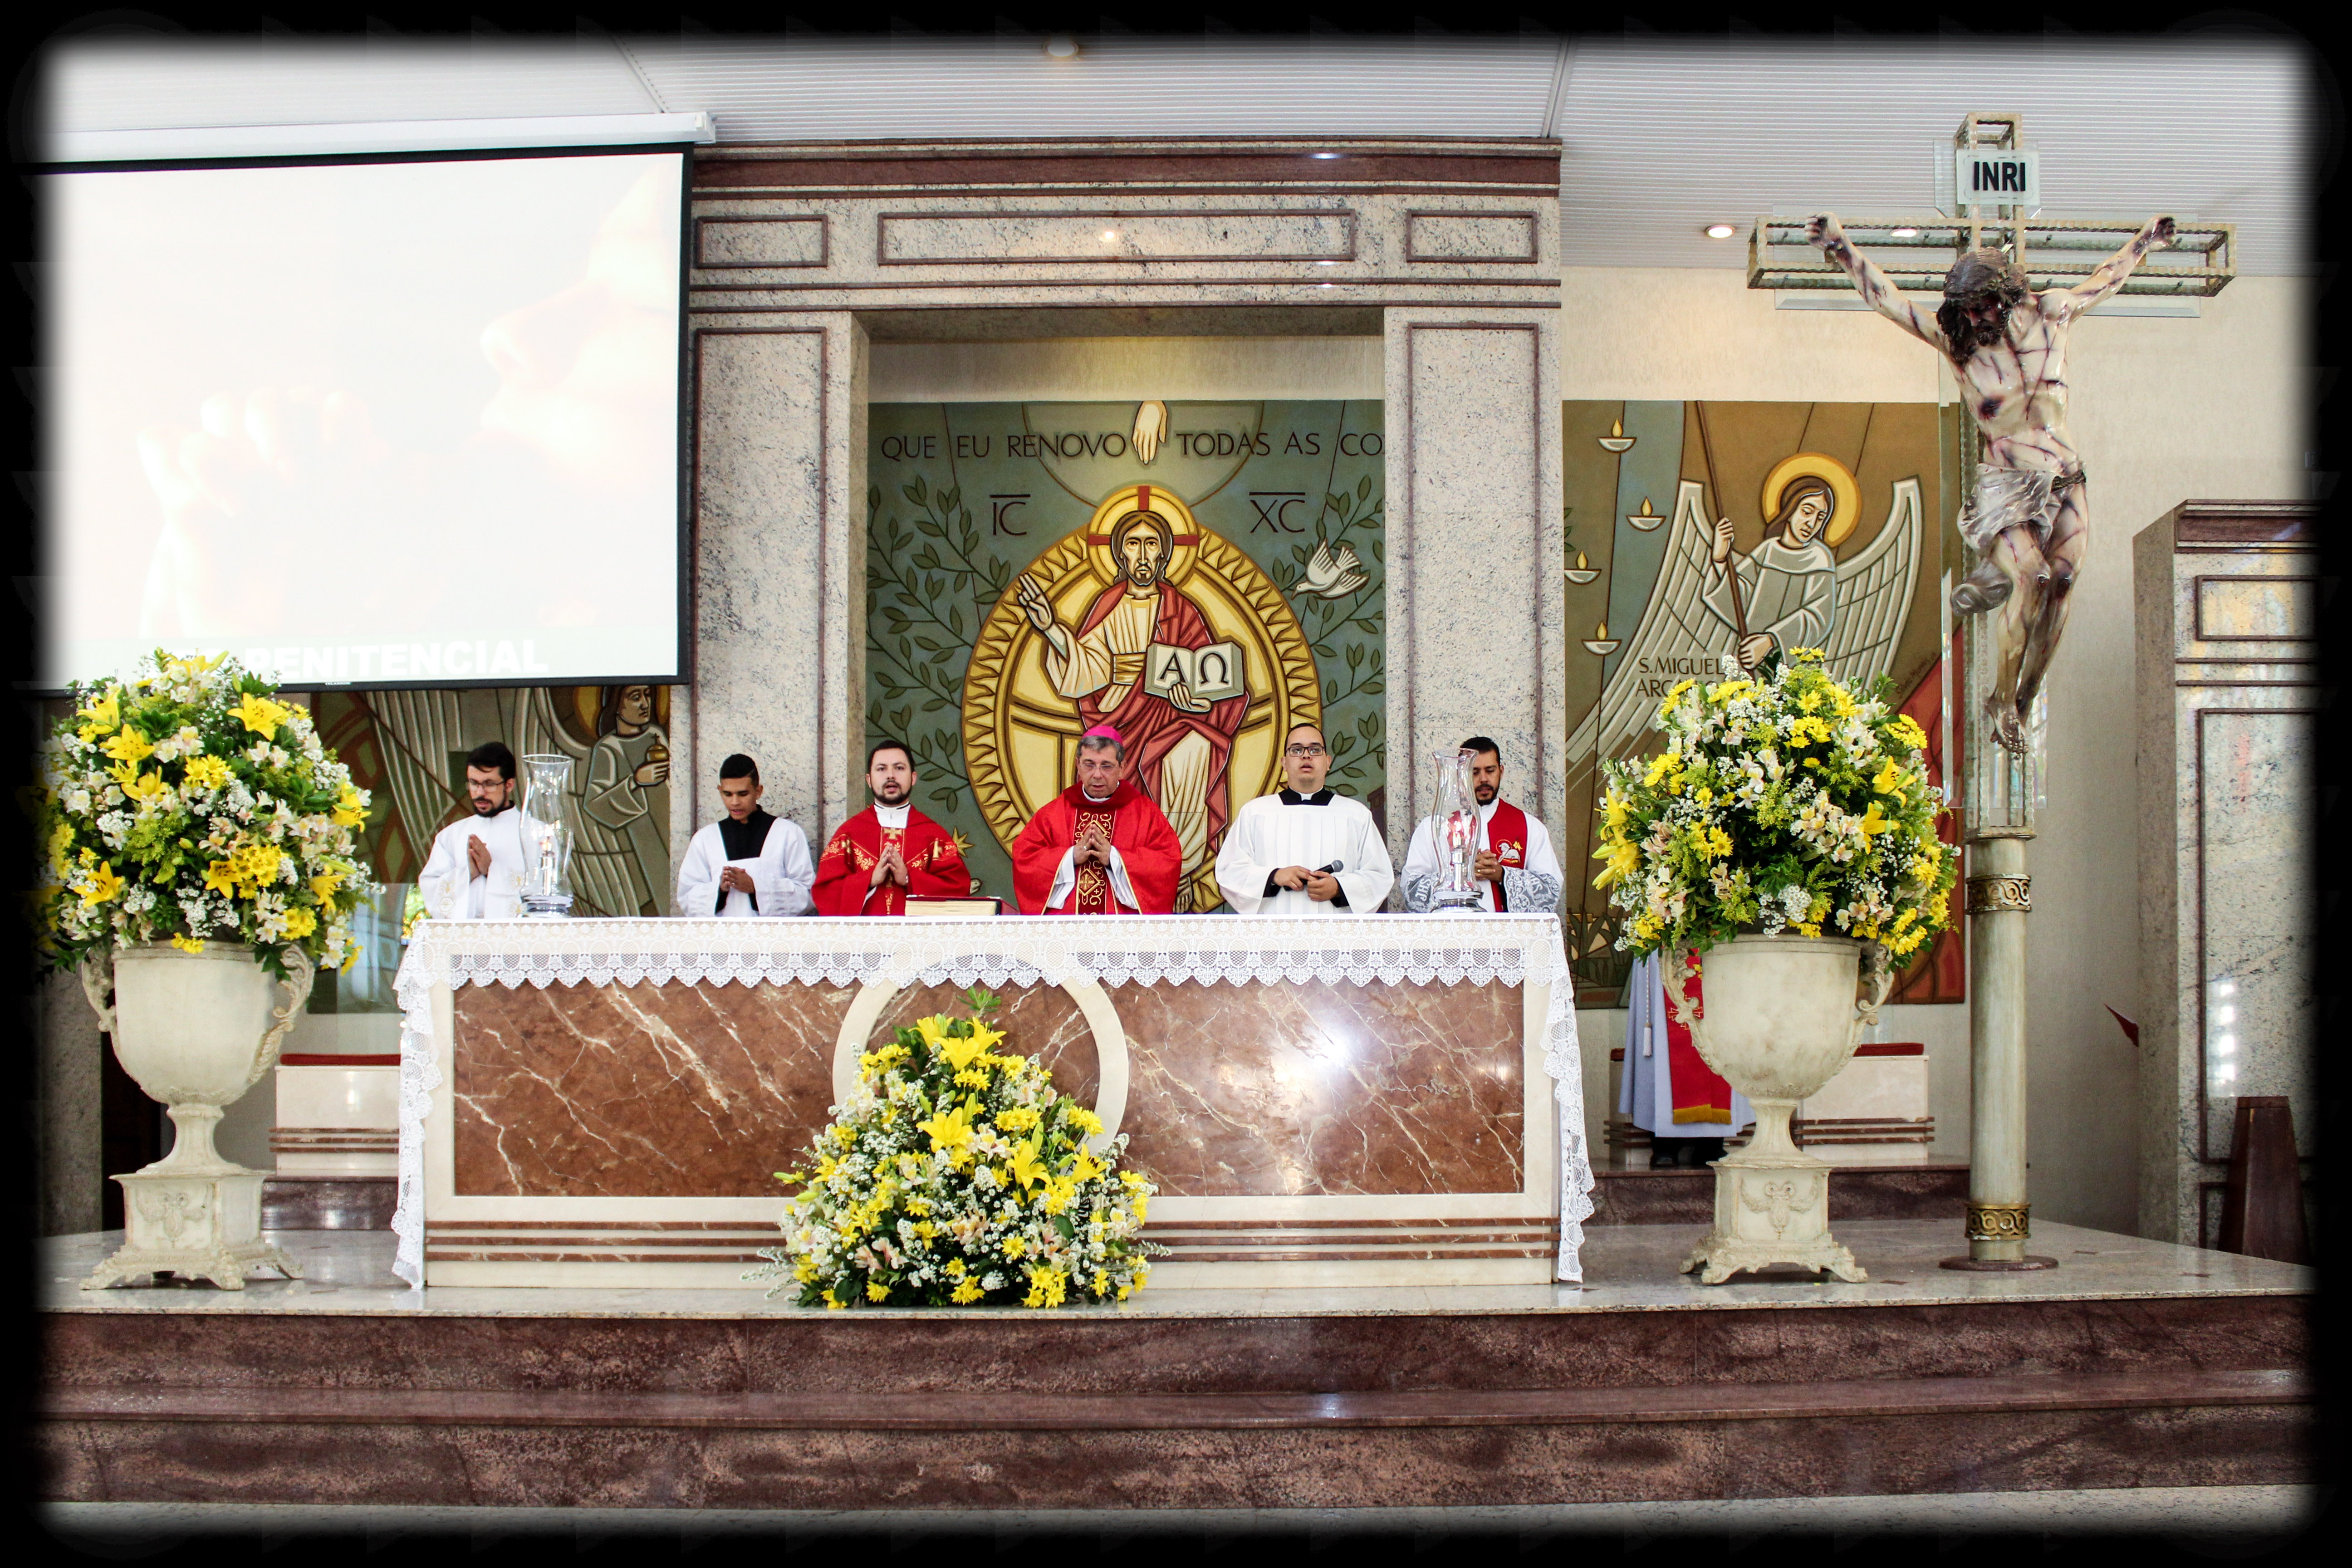 2° Domingo da Quaresma, Cobertura: PASCOM, By Paróquia de São Sebastião e  São Miguel Arcanjo